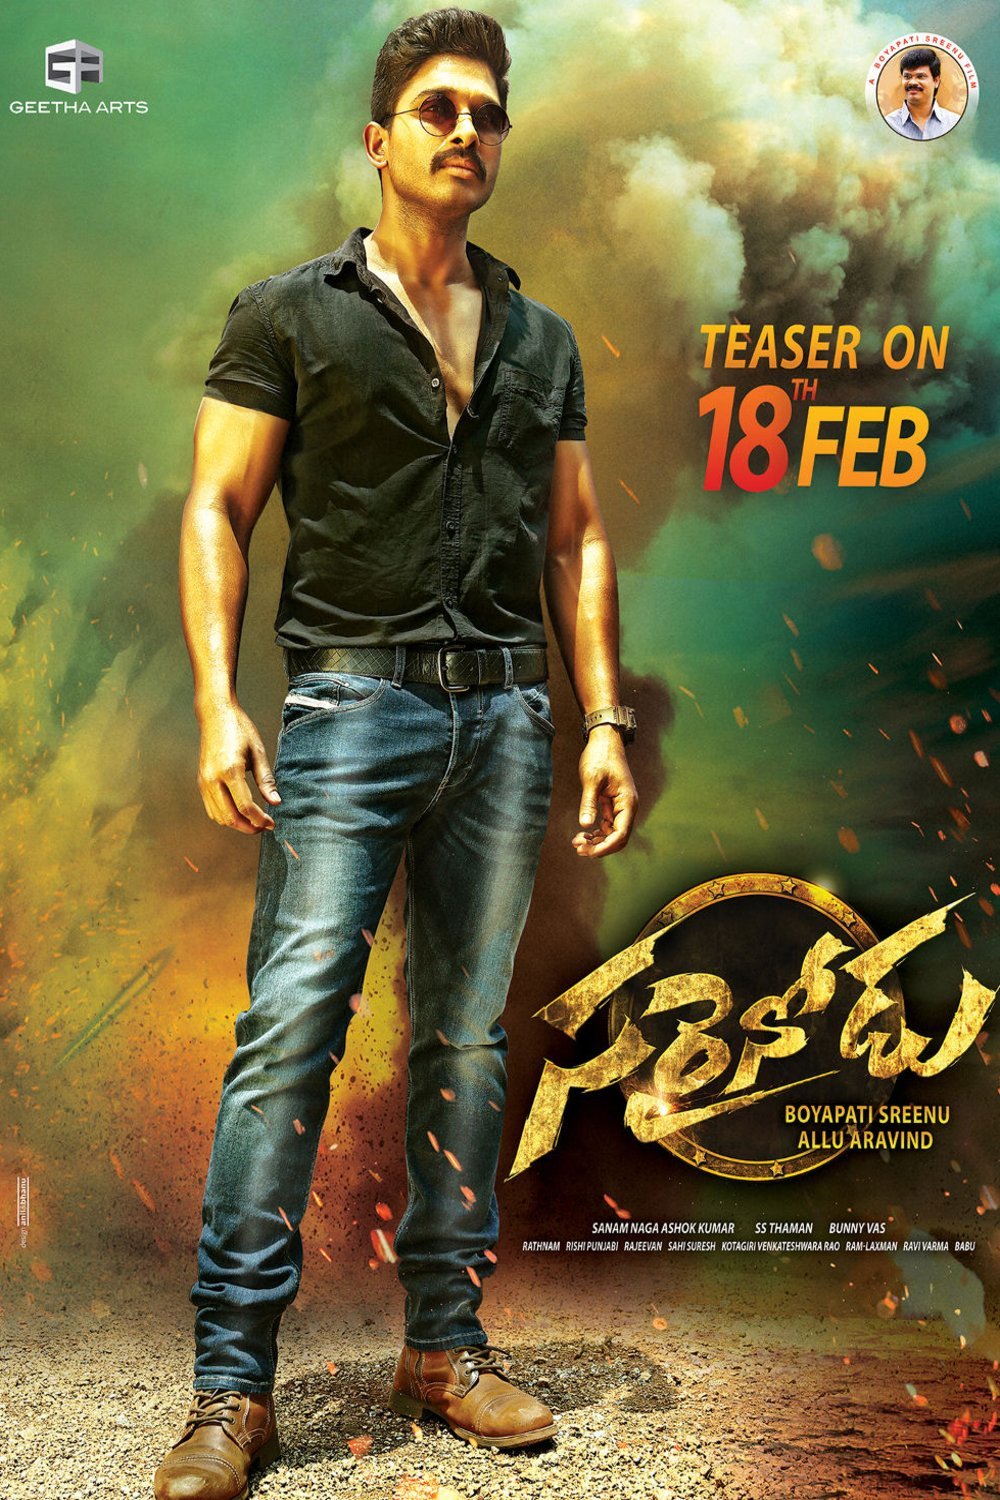 Telugu poster of the movie Sarrainodu